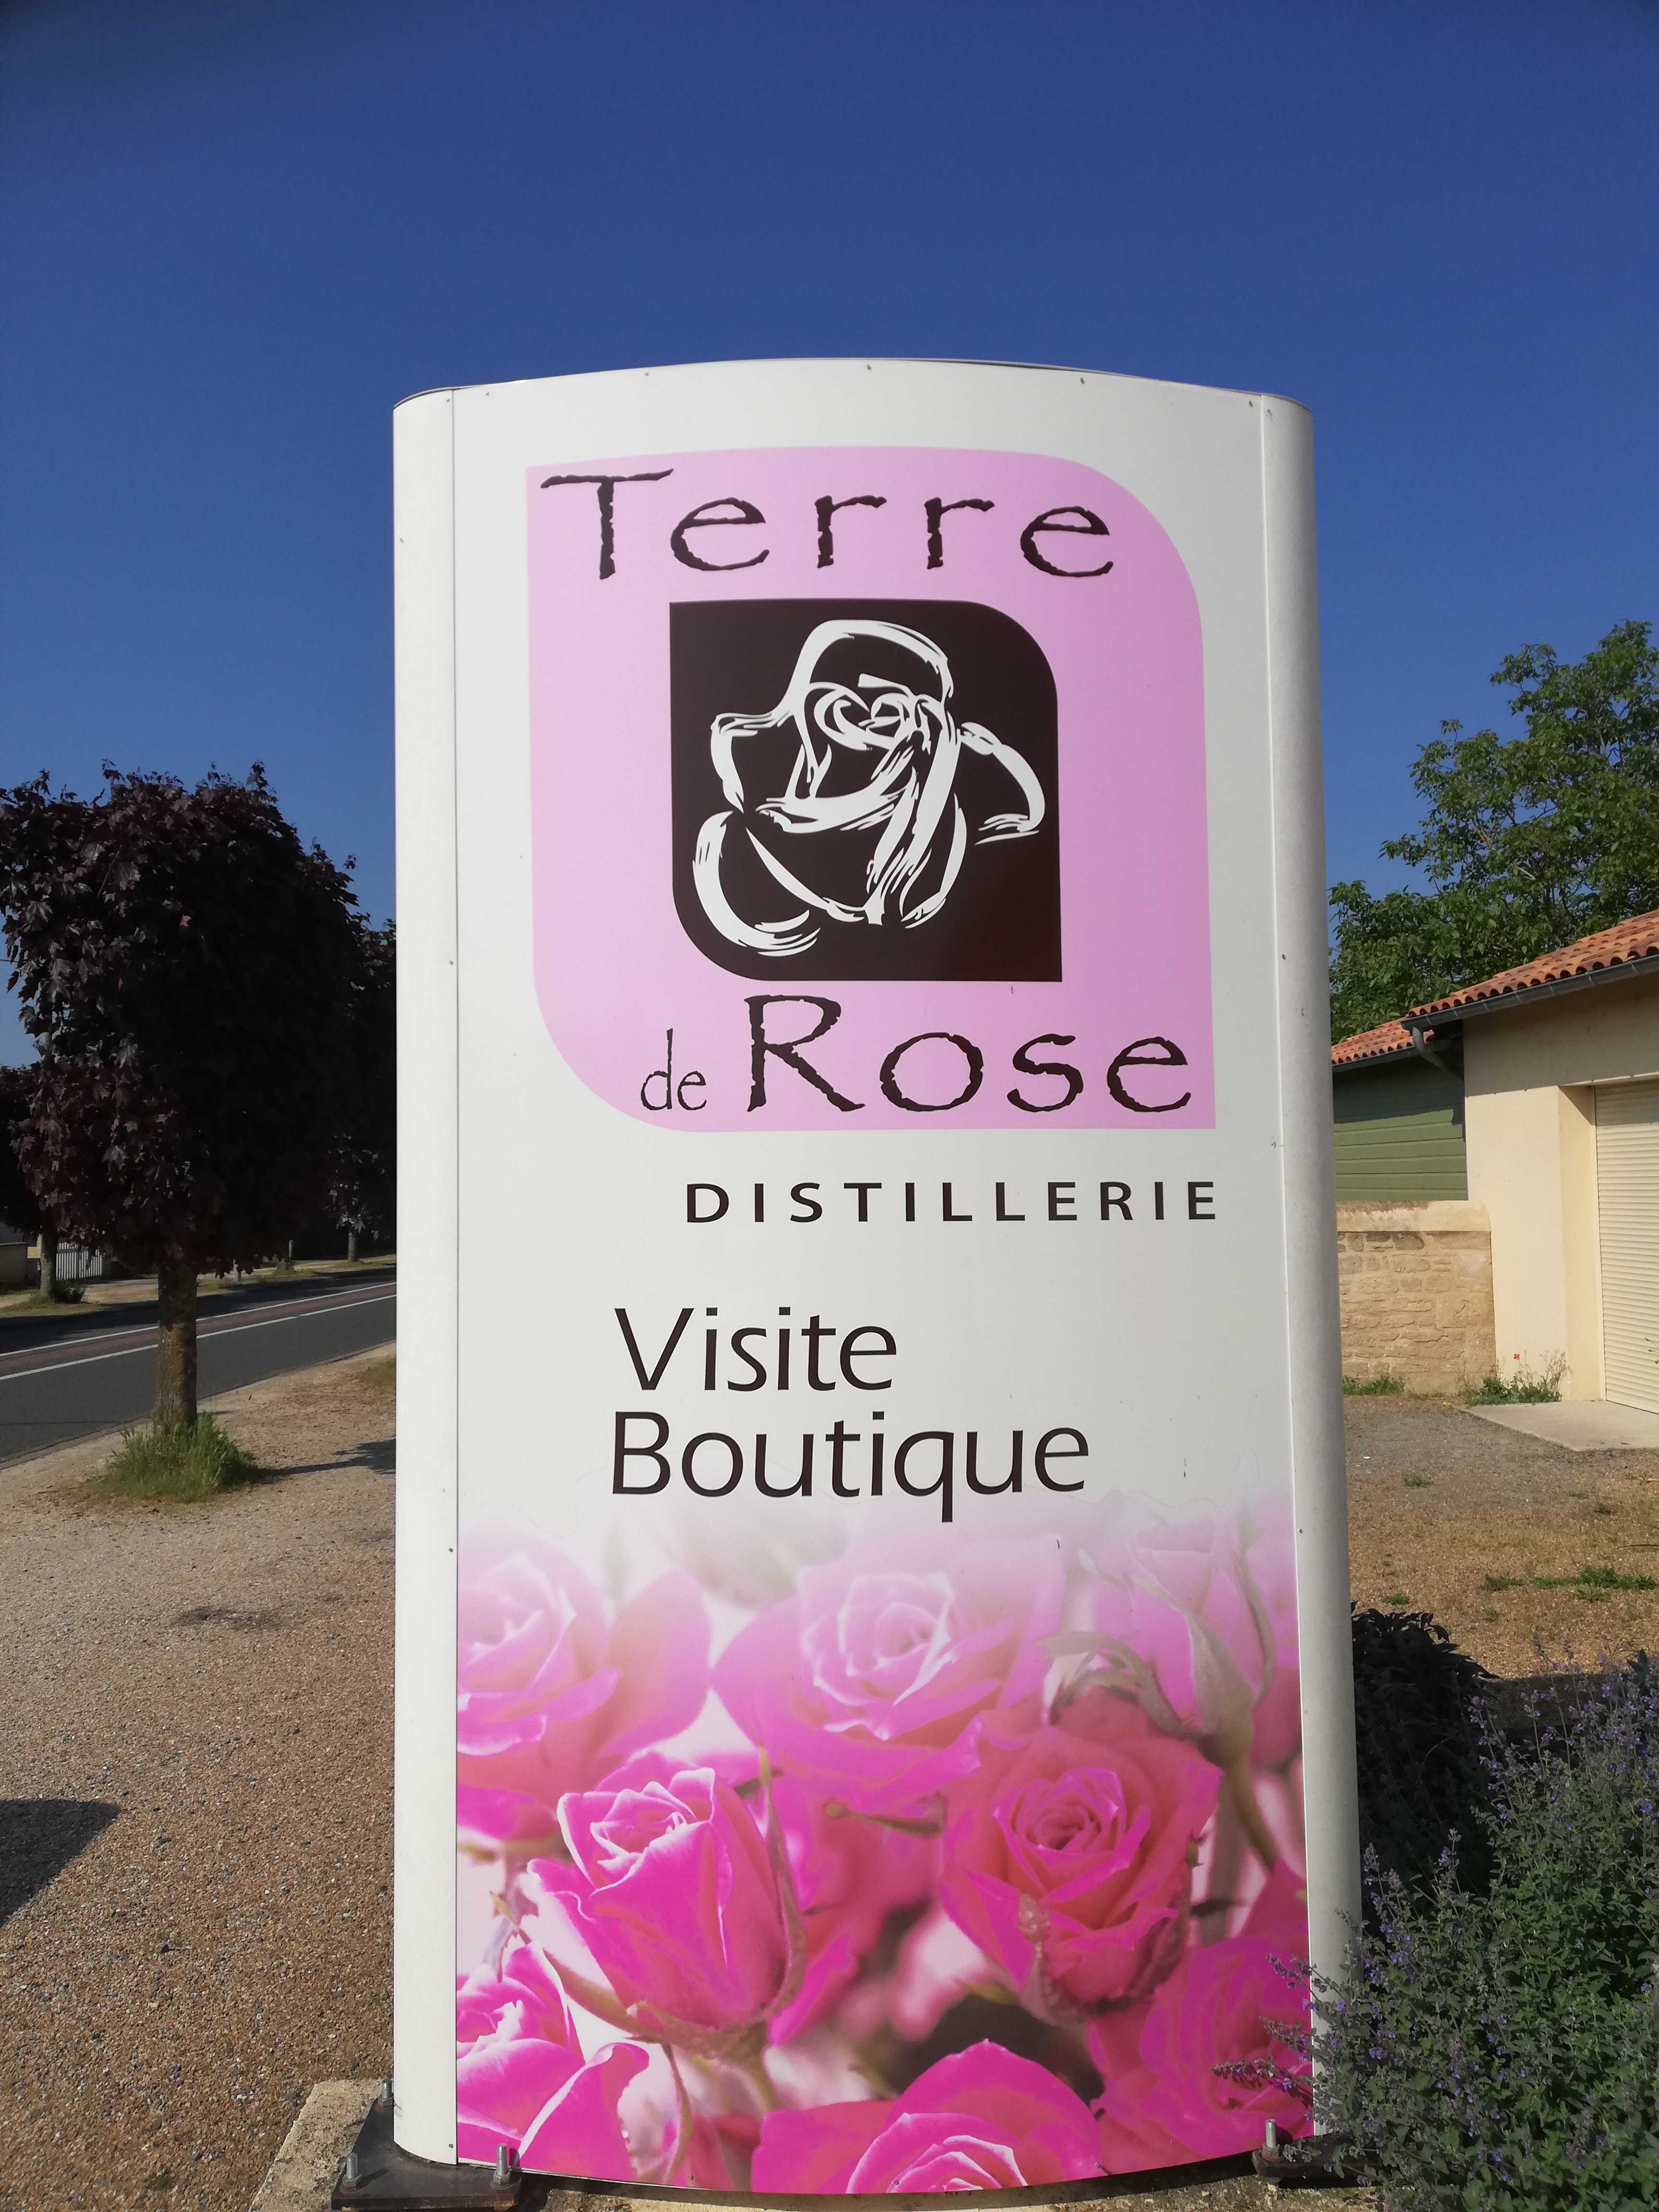 La boutique Terre de Rose : Achetez des produits à base de Rose !